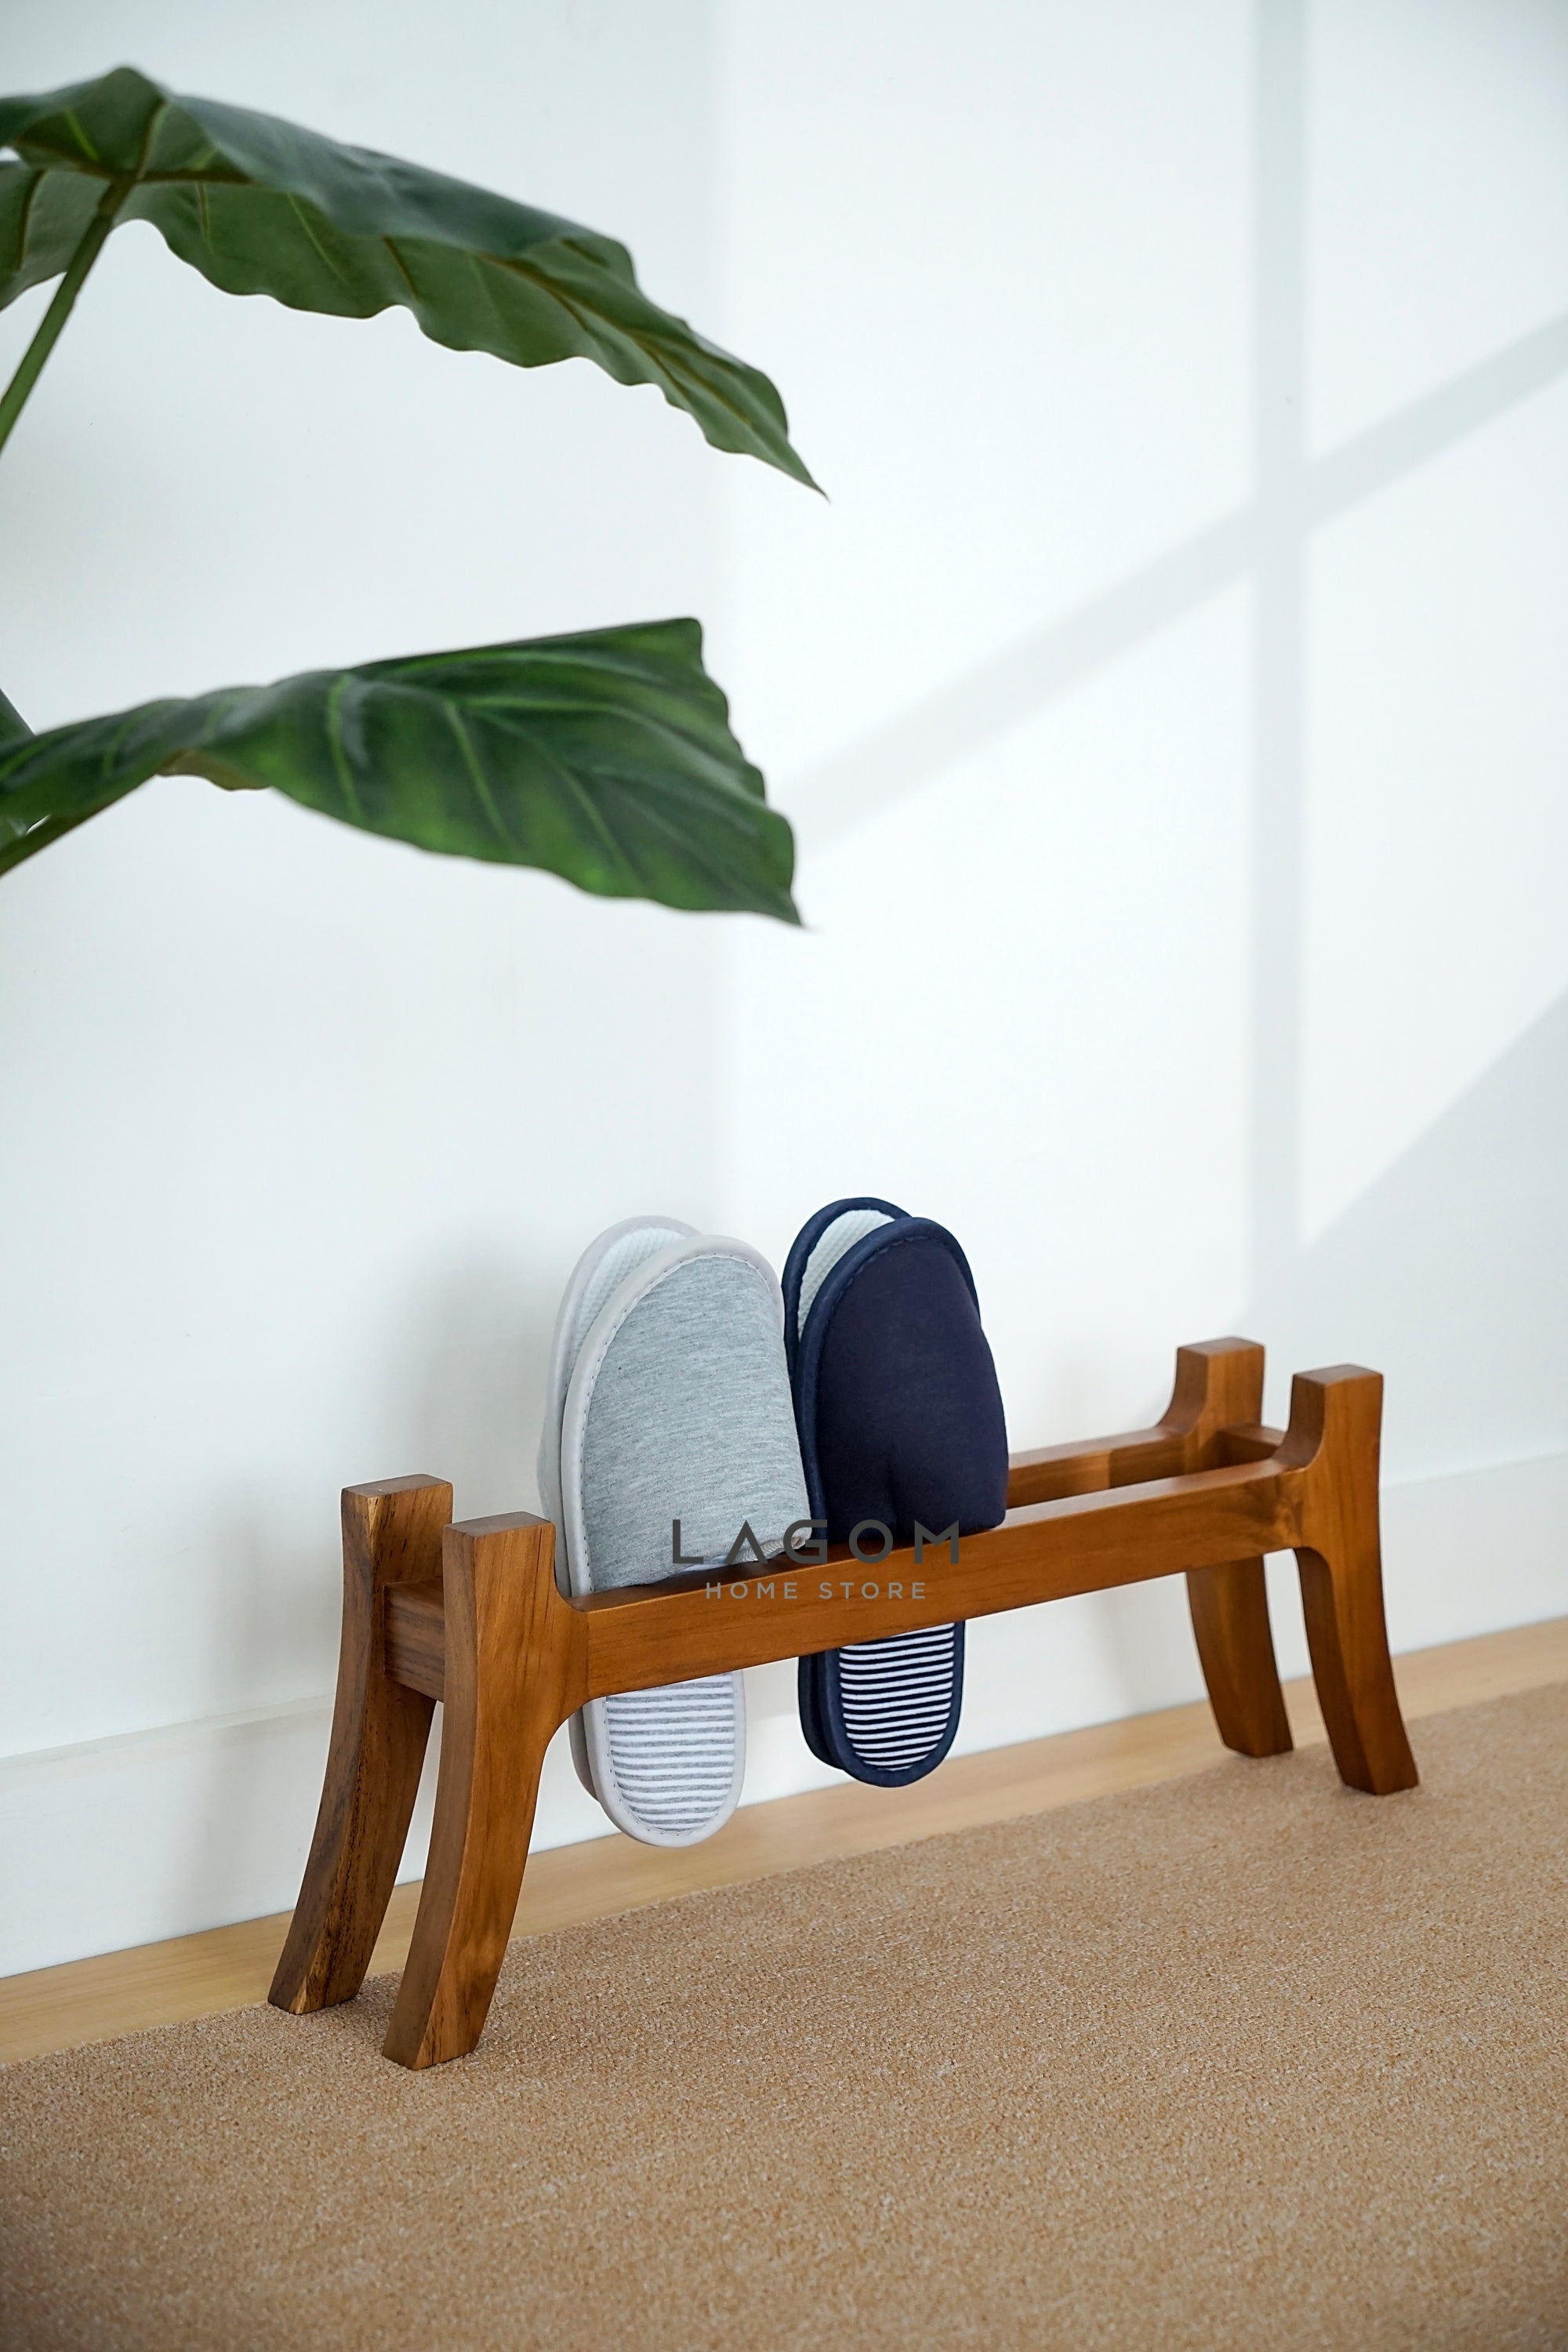 Tempat Sandal Unik dari Kayu Jati Solid Shoe Rack Lagom Home Store Jati Furnitur Teak Furniture Jakarta